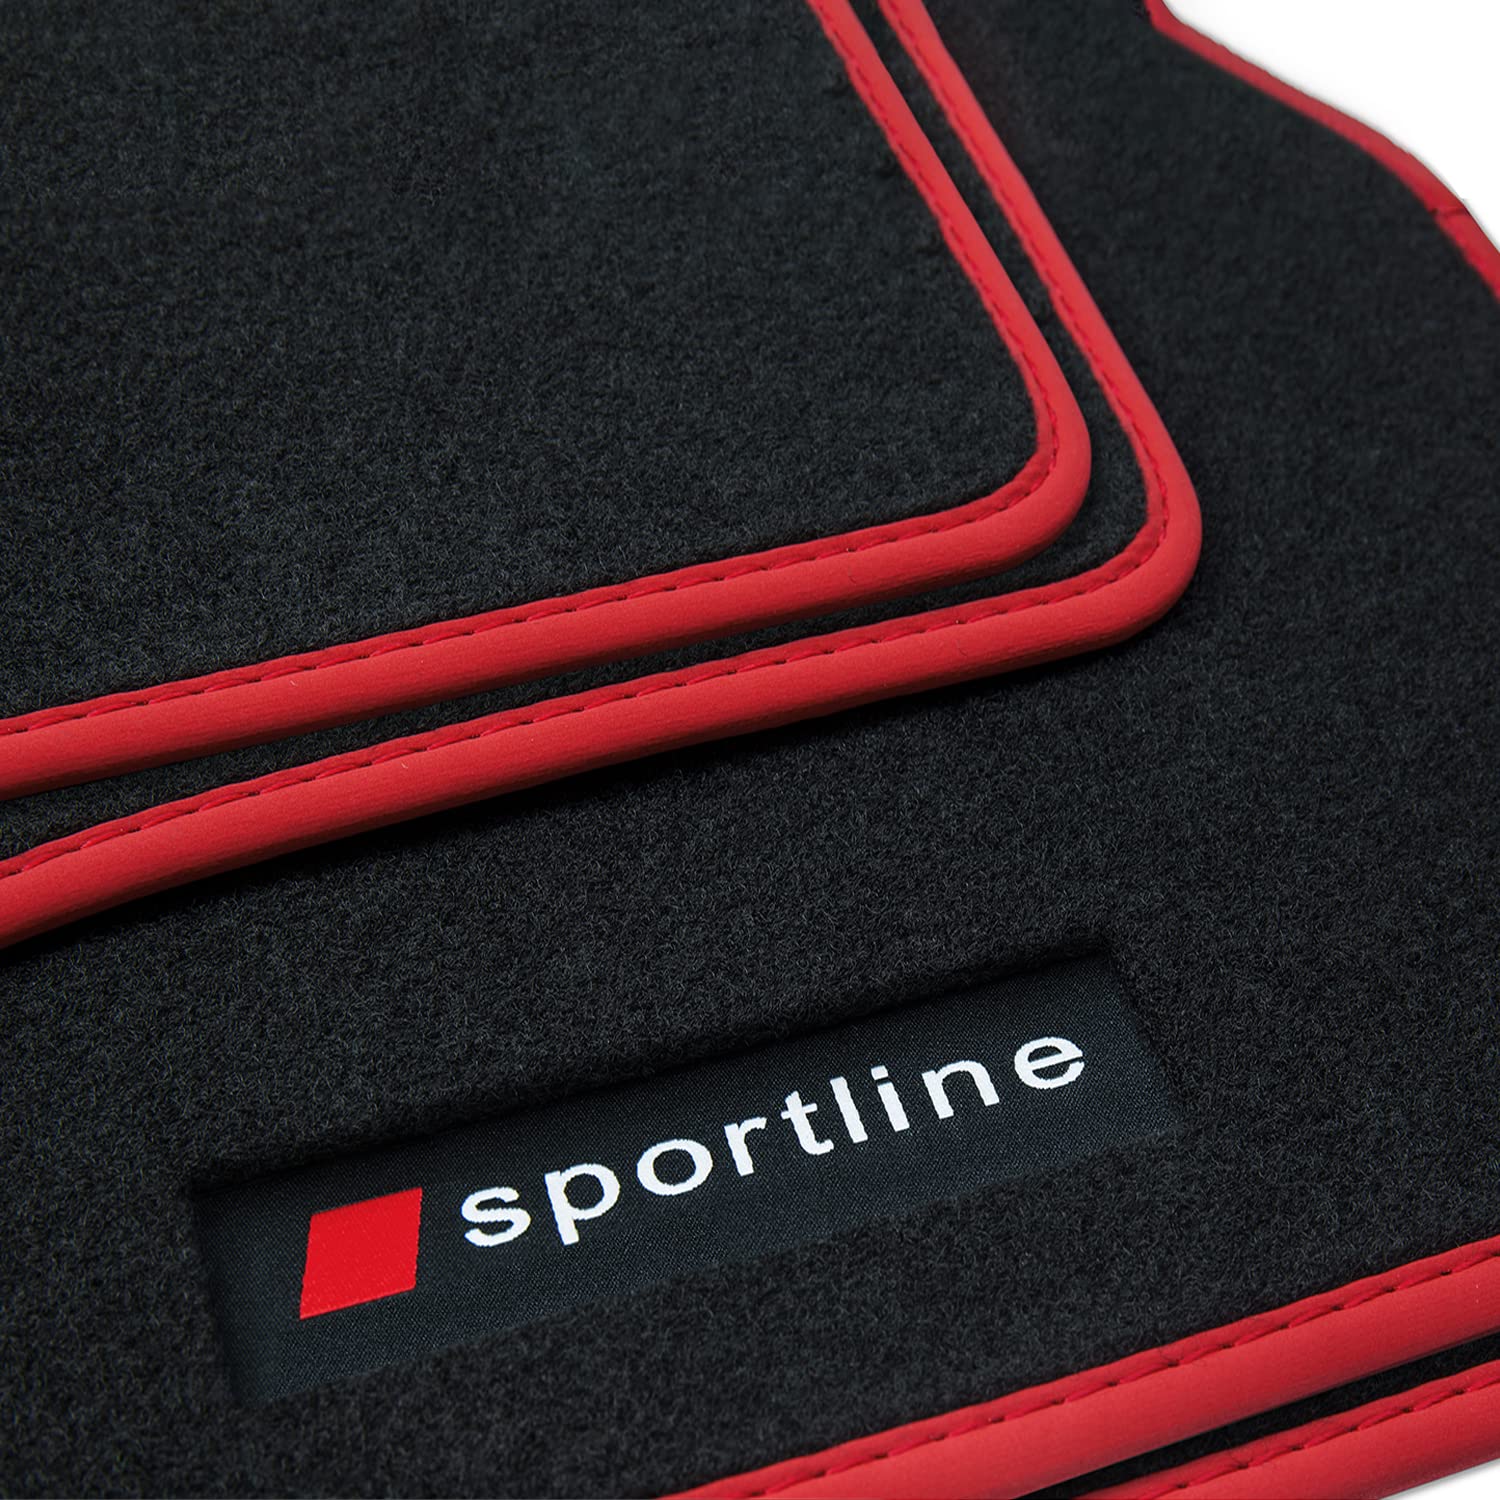 teileplus24 PV211 Fußmatten Gummimatten Sportline Design kompatibel mit Audi A5 F5 Coupé 2016-, Bandeinfassung:Rot von teileplus24